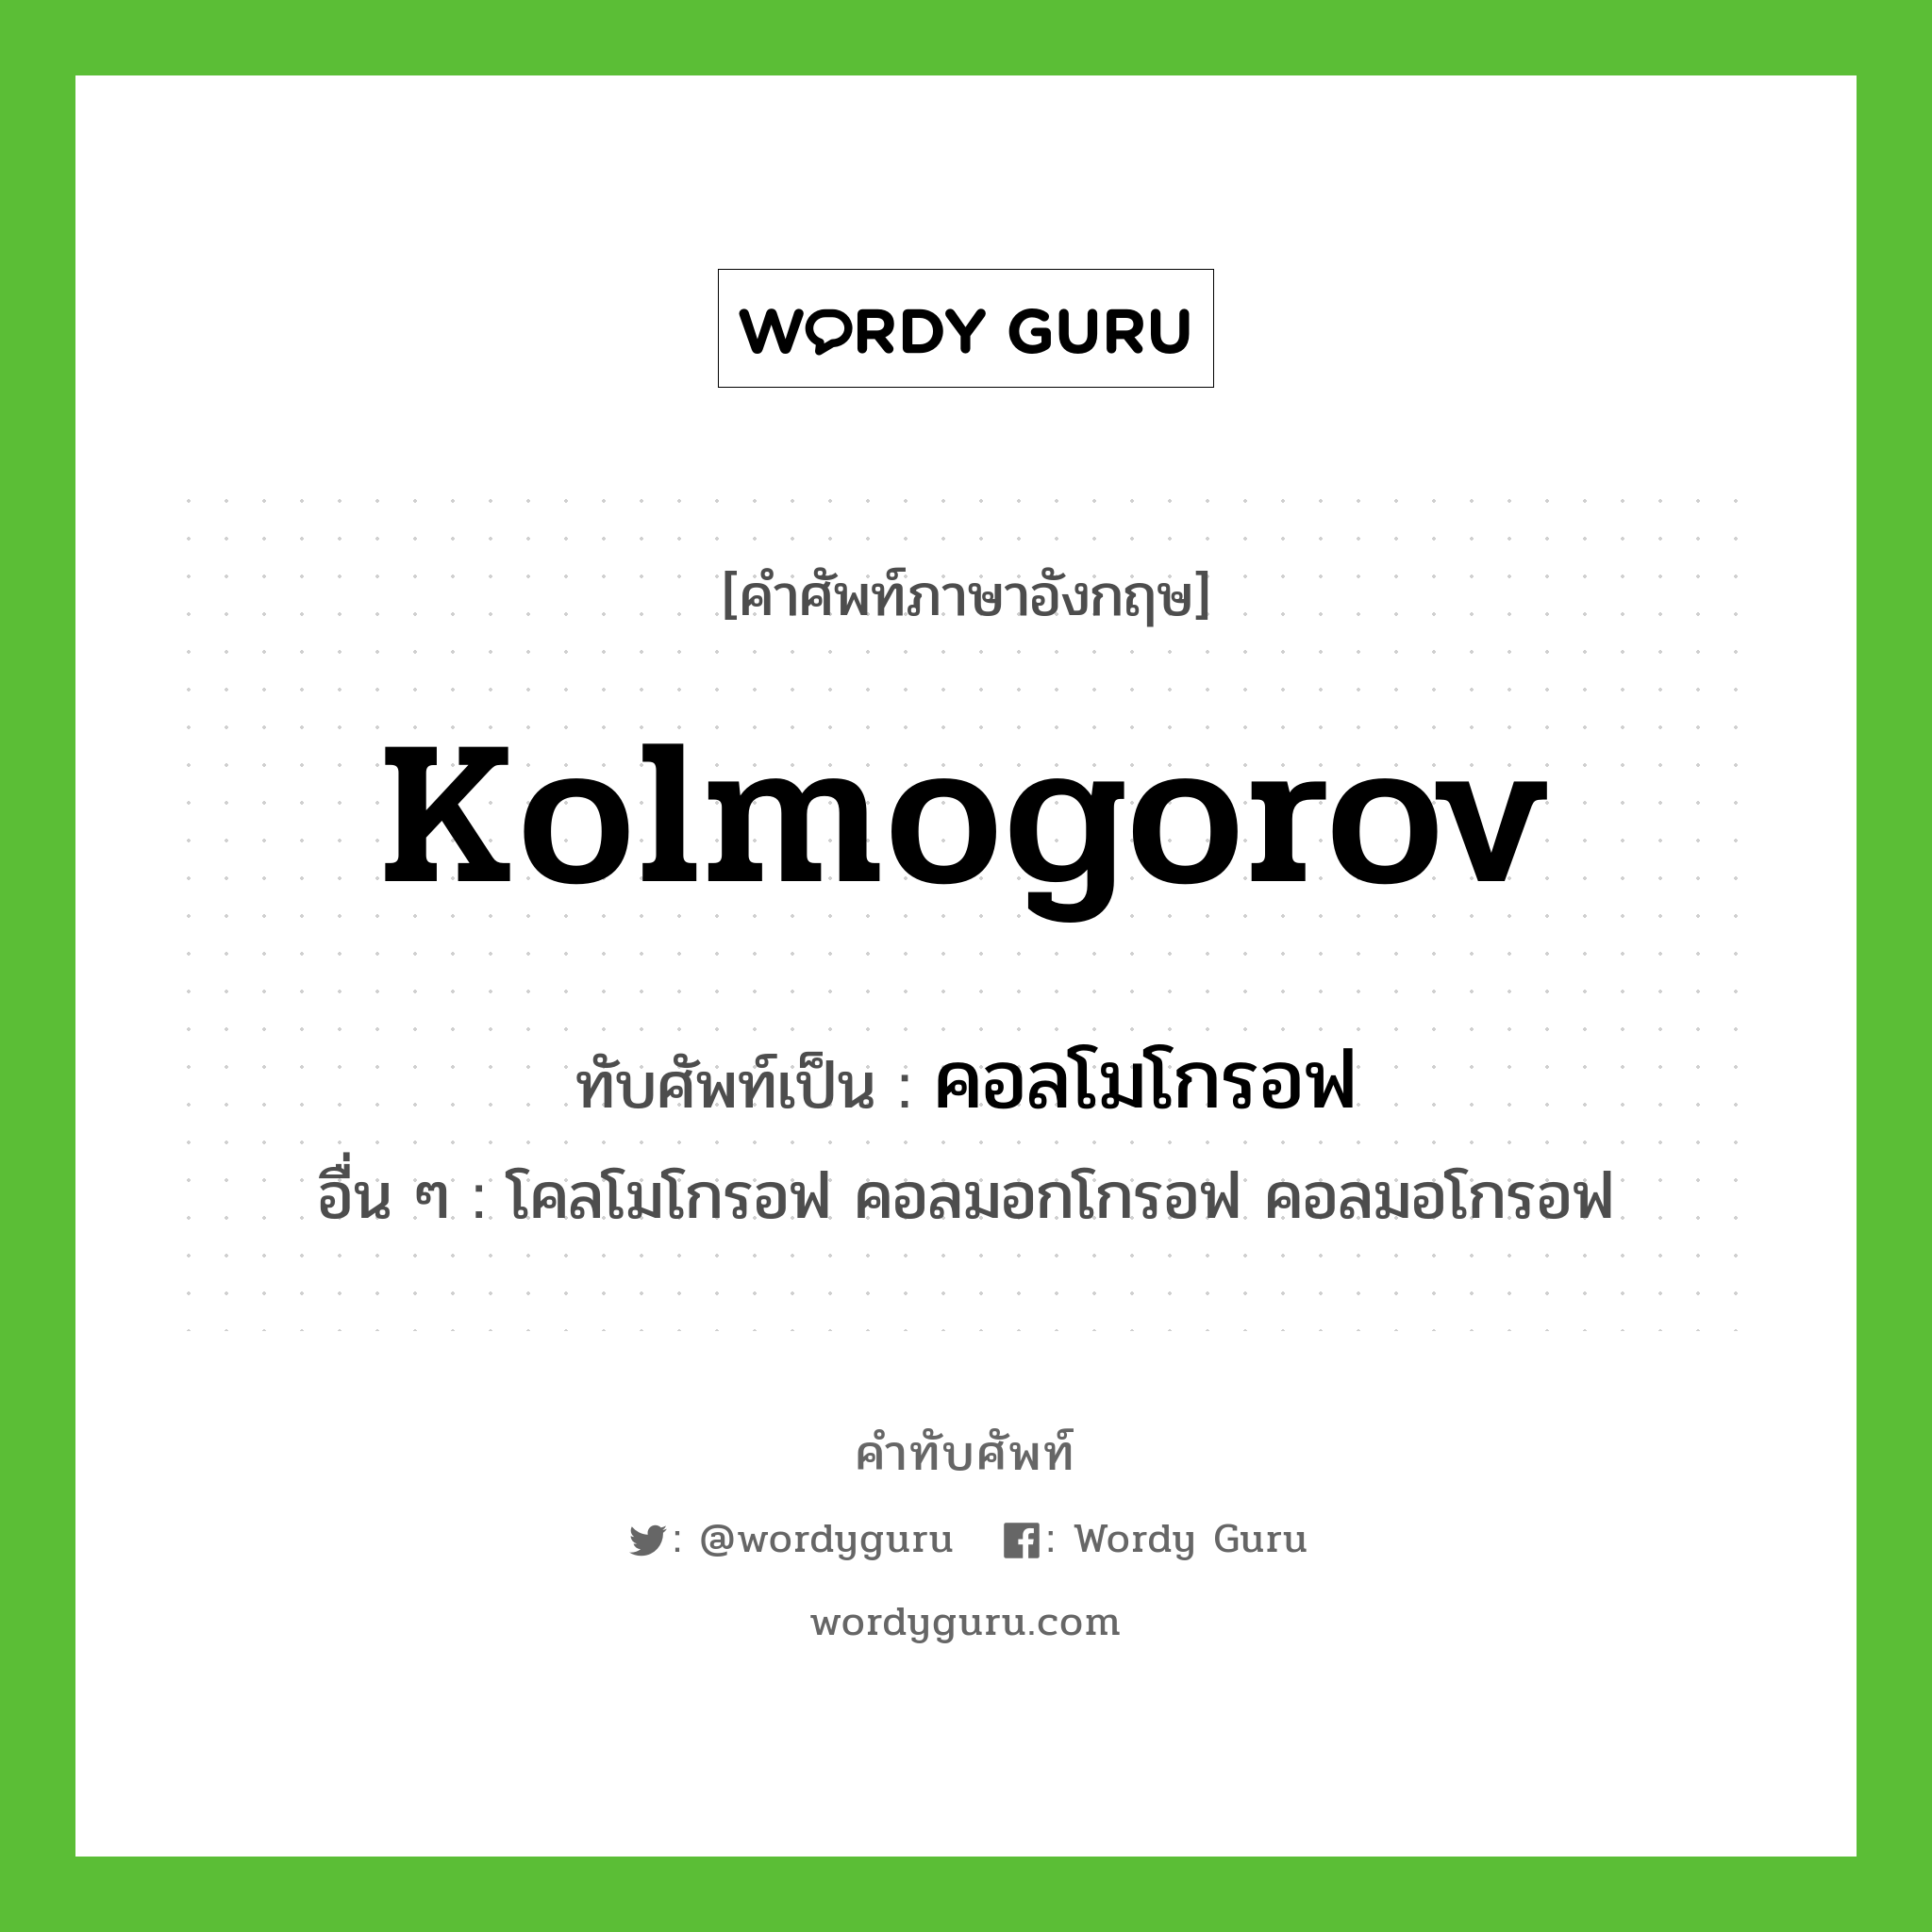 คอลโมโกรอฟ เขียนอย่างไร?, คำศัพท์ภาษาอังกฤษ คอลโมโกรอฟ ทับศัพท์เป็น Kolmogorov อื่น ๆ โคลโมโกรอฟ คอลมอกโกรอฟ คอลมอโกรอฟ